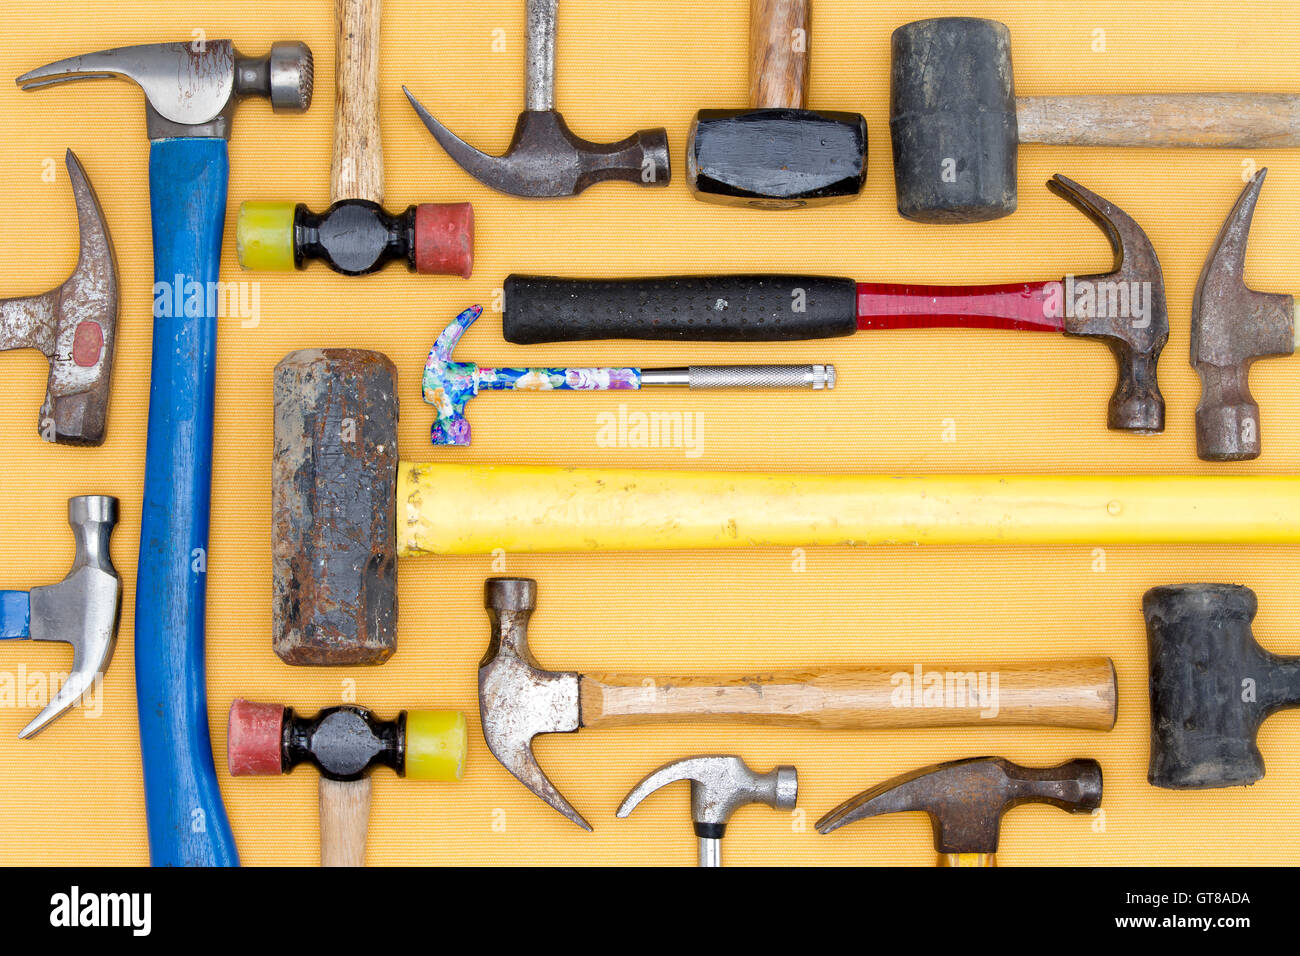 Visualización de una diversidad de los martillos en kit de herramientas de bricolaje, carpintería, construcción, mazas y un martillo en una cuidada arrangeme Fotografía de stock - Alamy